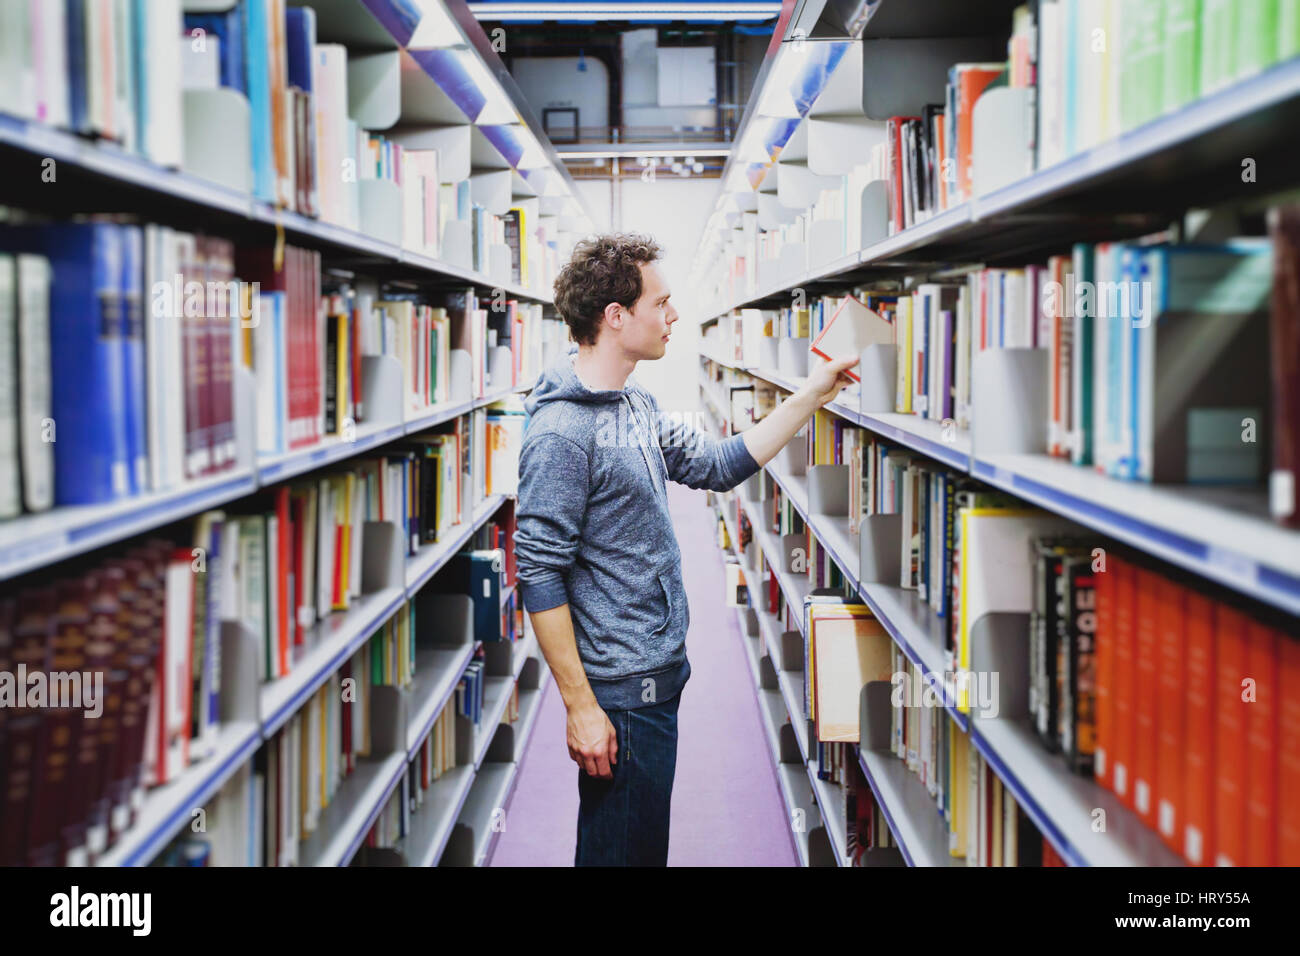 Studentin in der Bibliothek der Universität, kaukasischen Jüngling Einnahme Buch aus Regal, Bildungskonzept Stockfoto